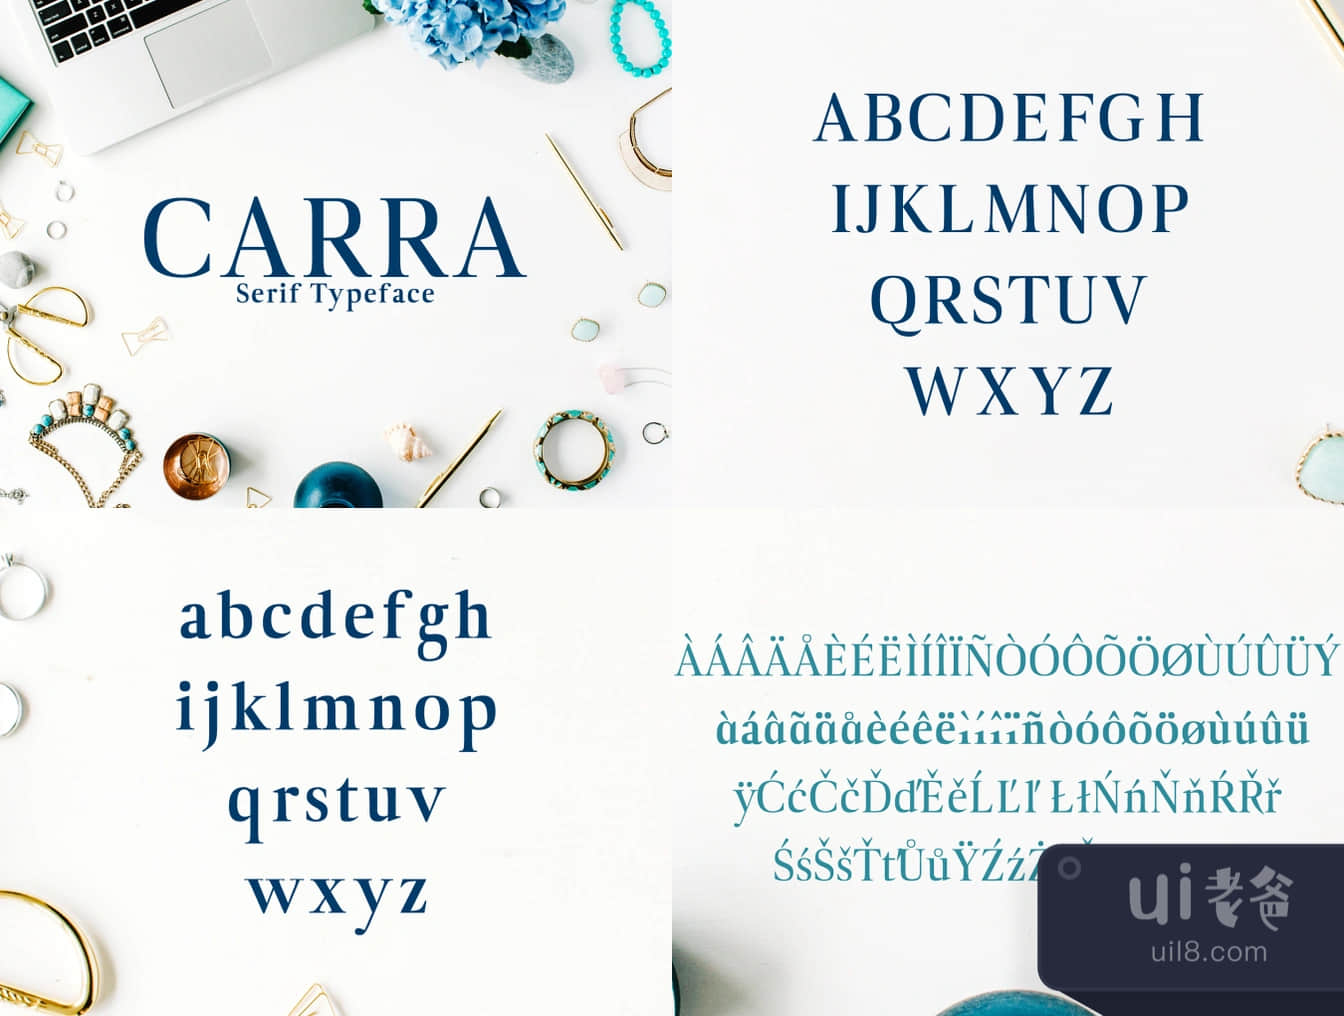 卡拉无衬线字体 (Carra Serif Typeface)插图